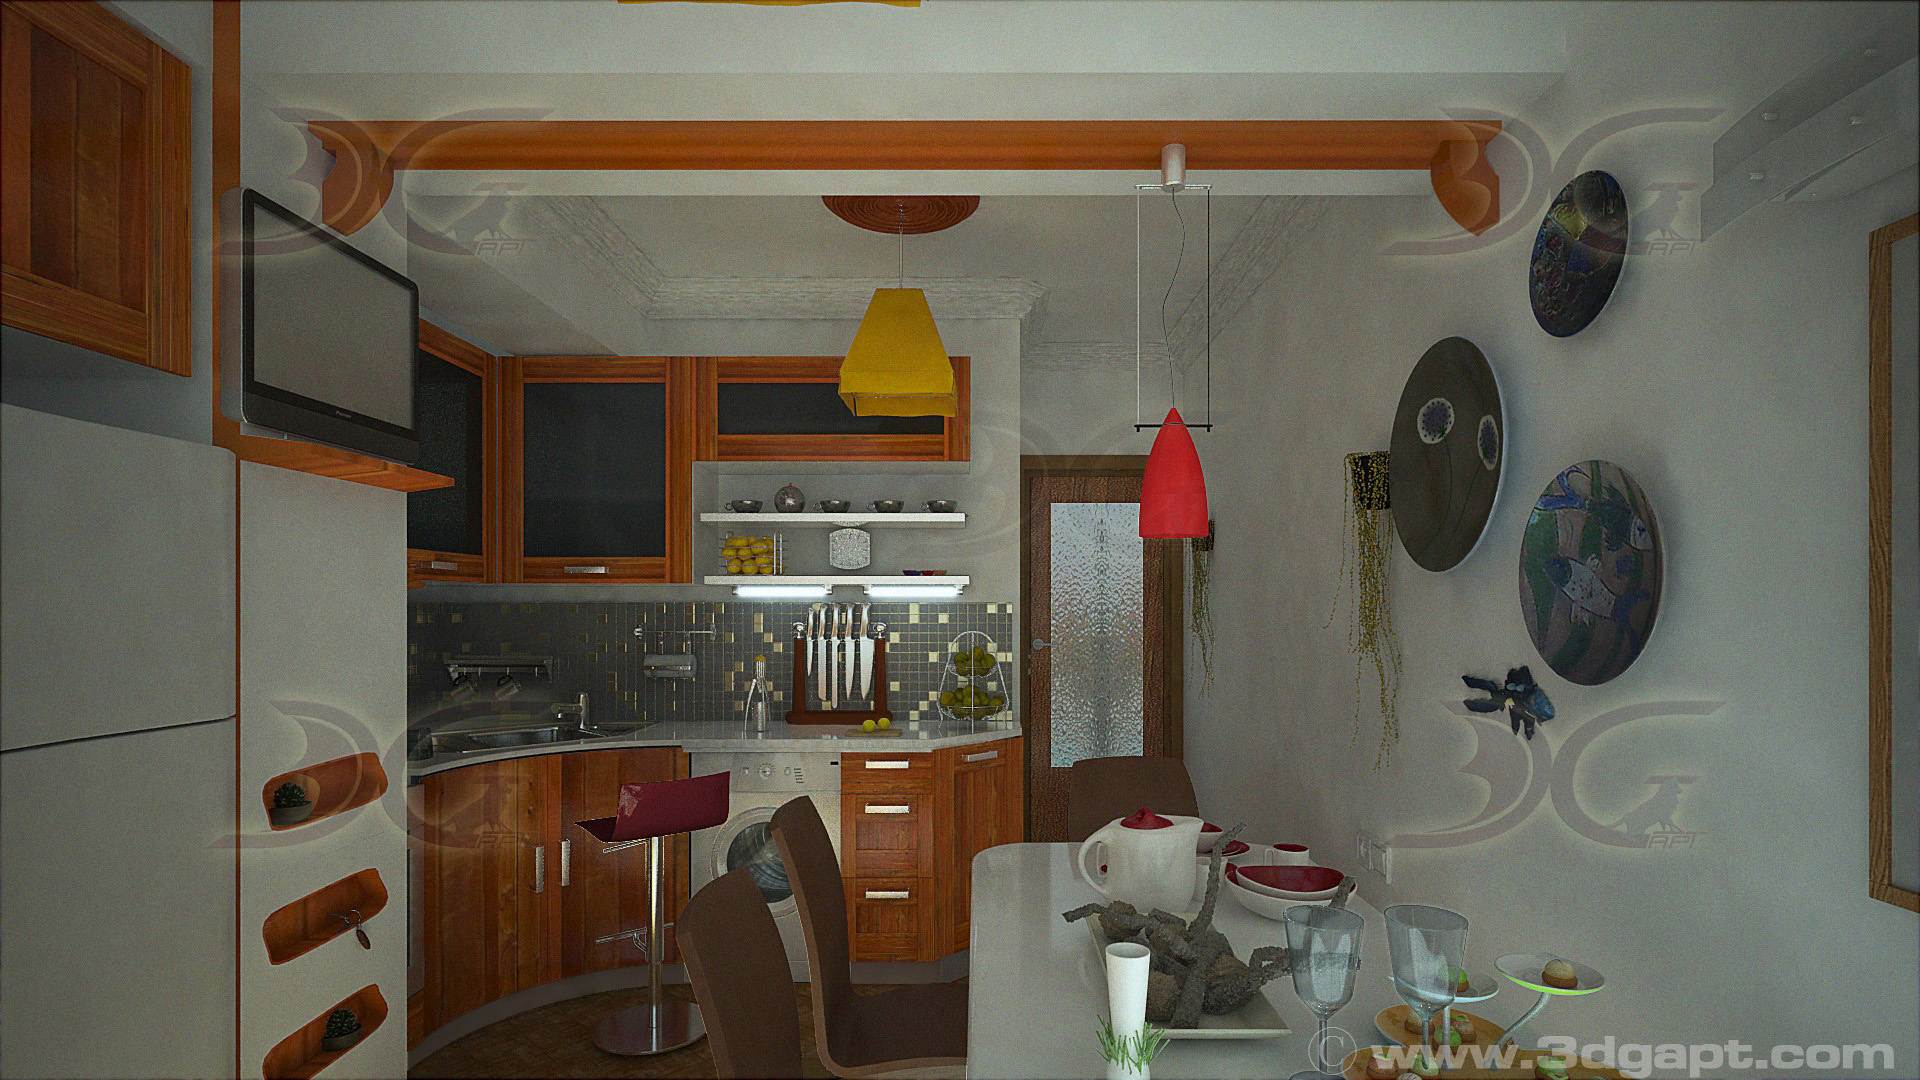 Architecture Interior Kitchen 3versions 23